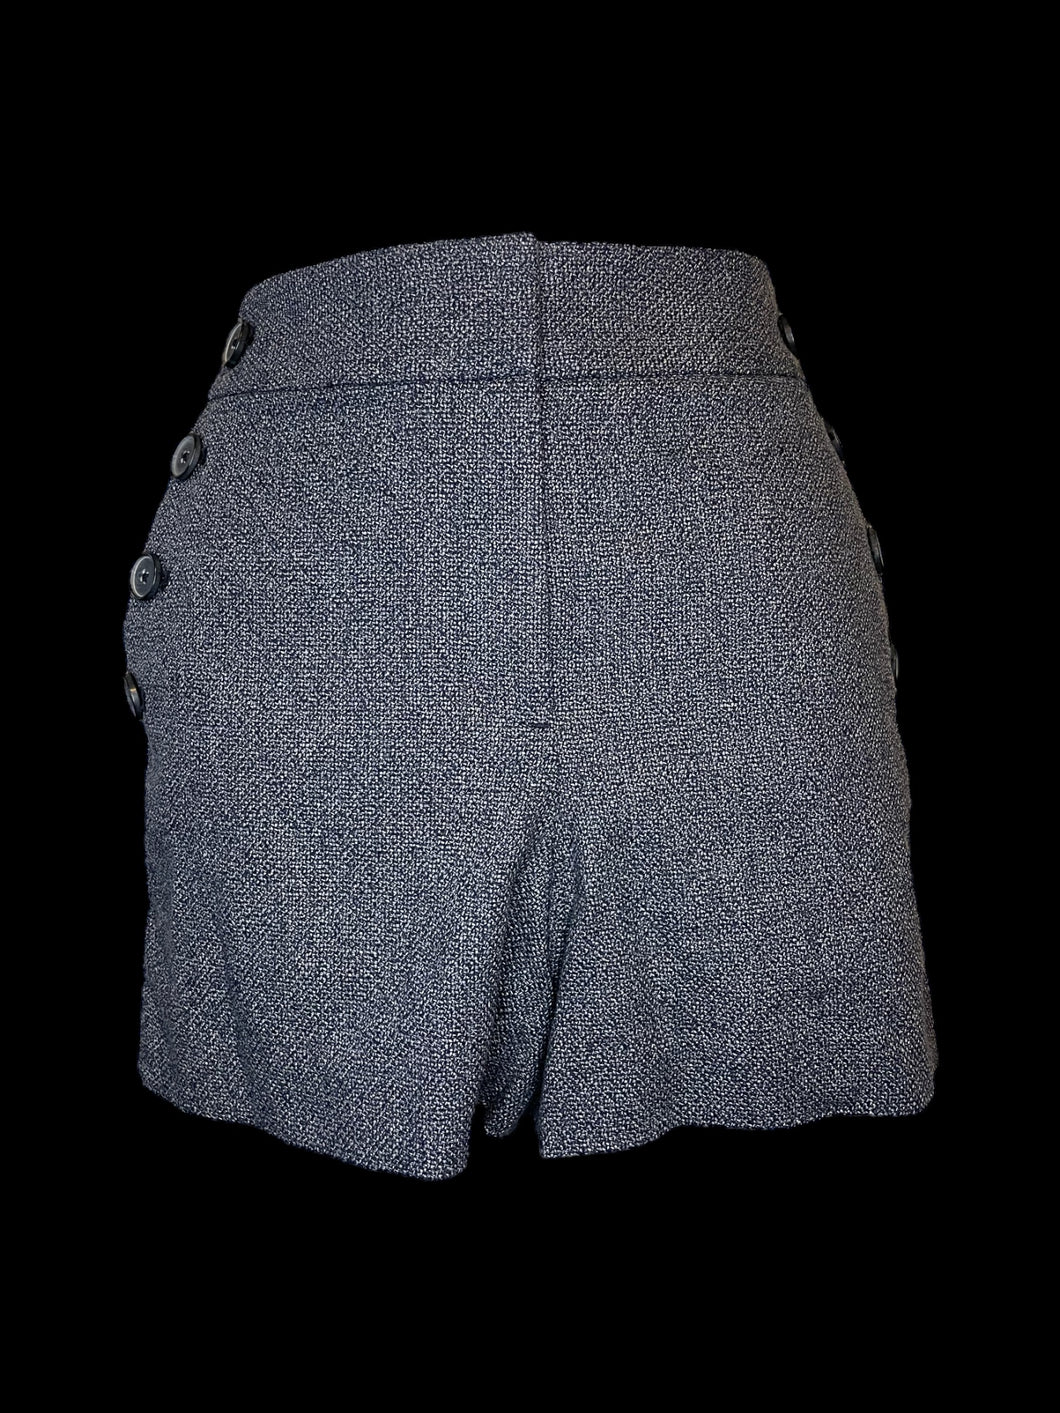 L Blue & grey knit shorts w/ pockets, button detail, & zipper/double clasp/button closure